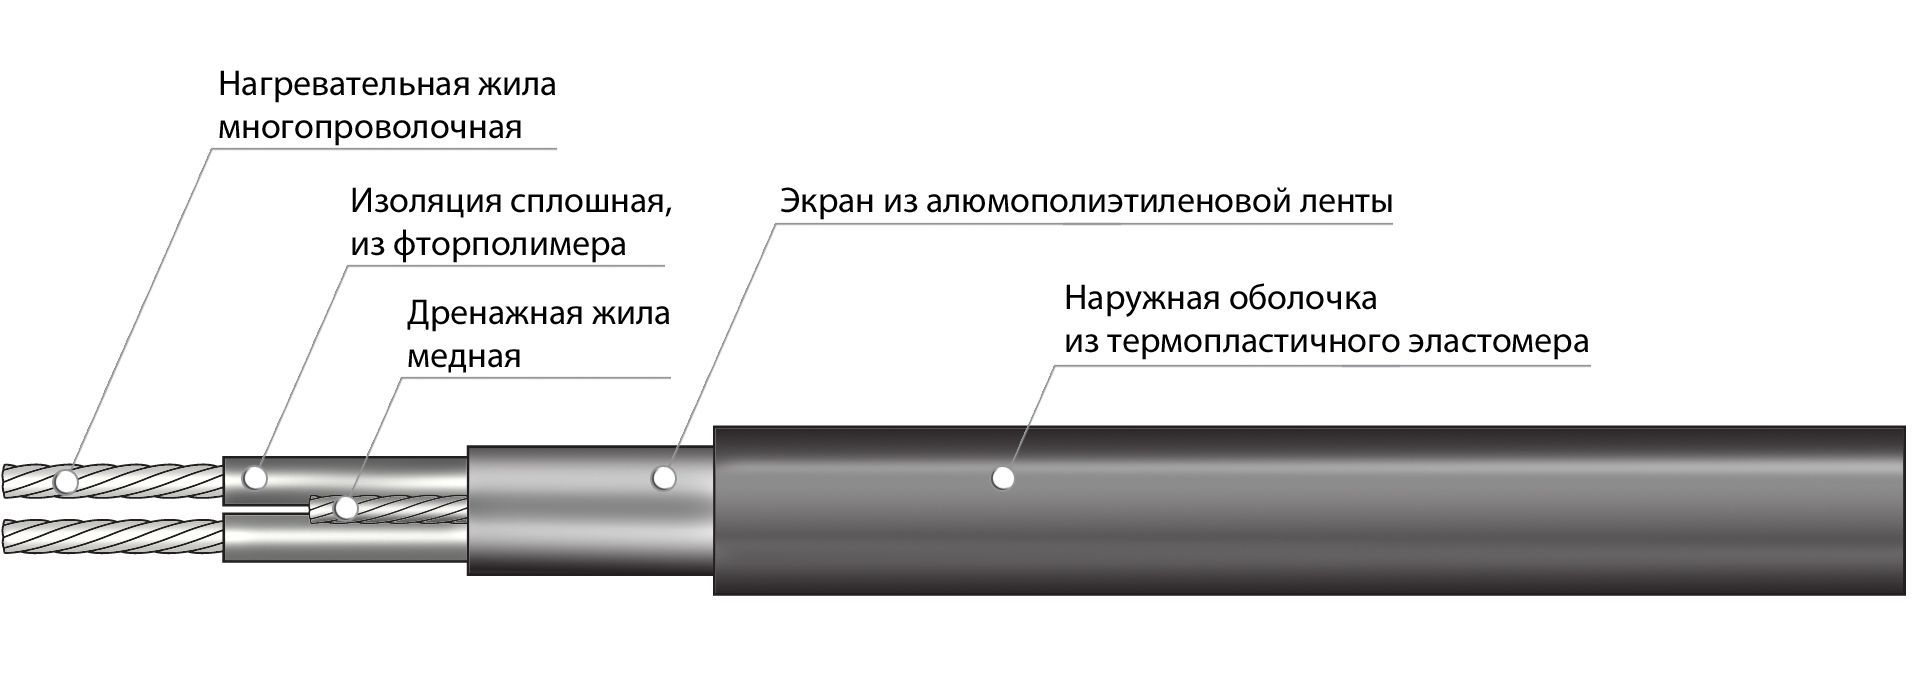 Резистивный кабель 30МНТ - 105м/10,5м²